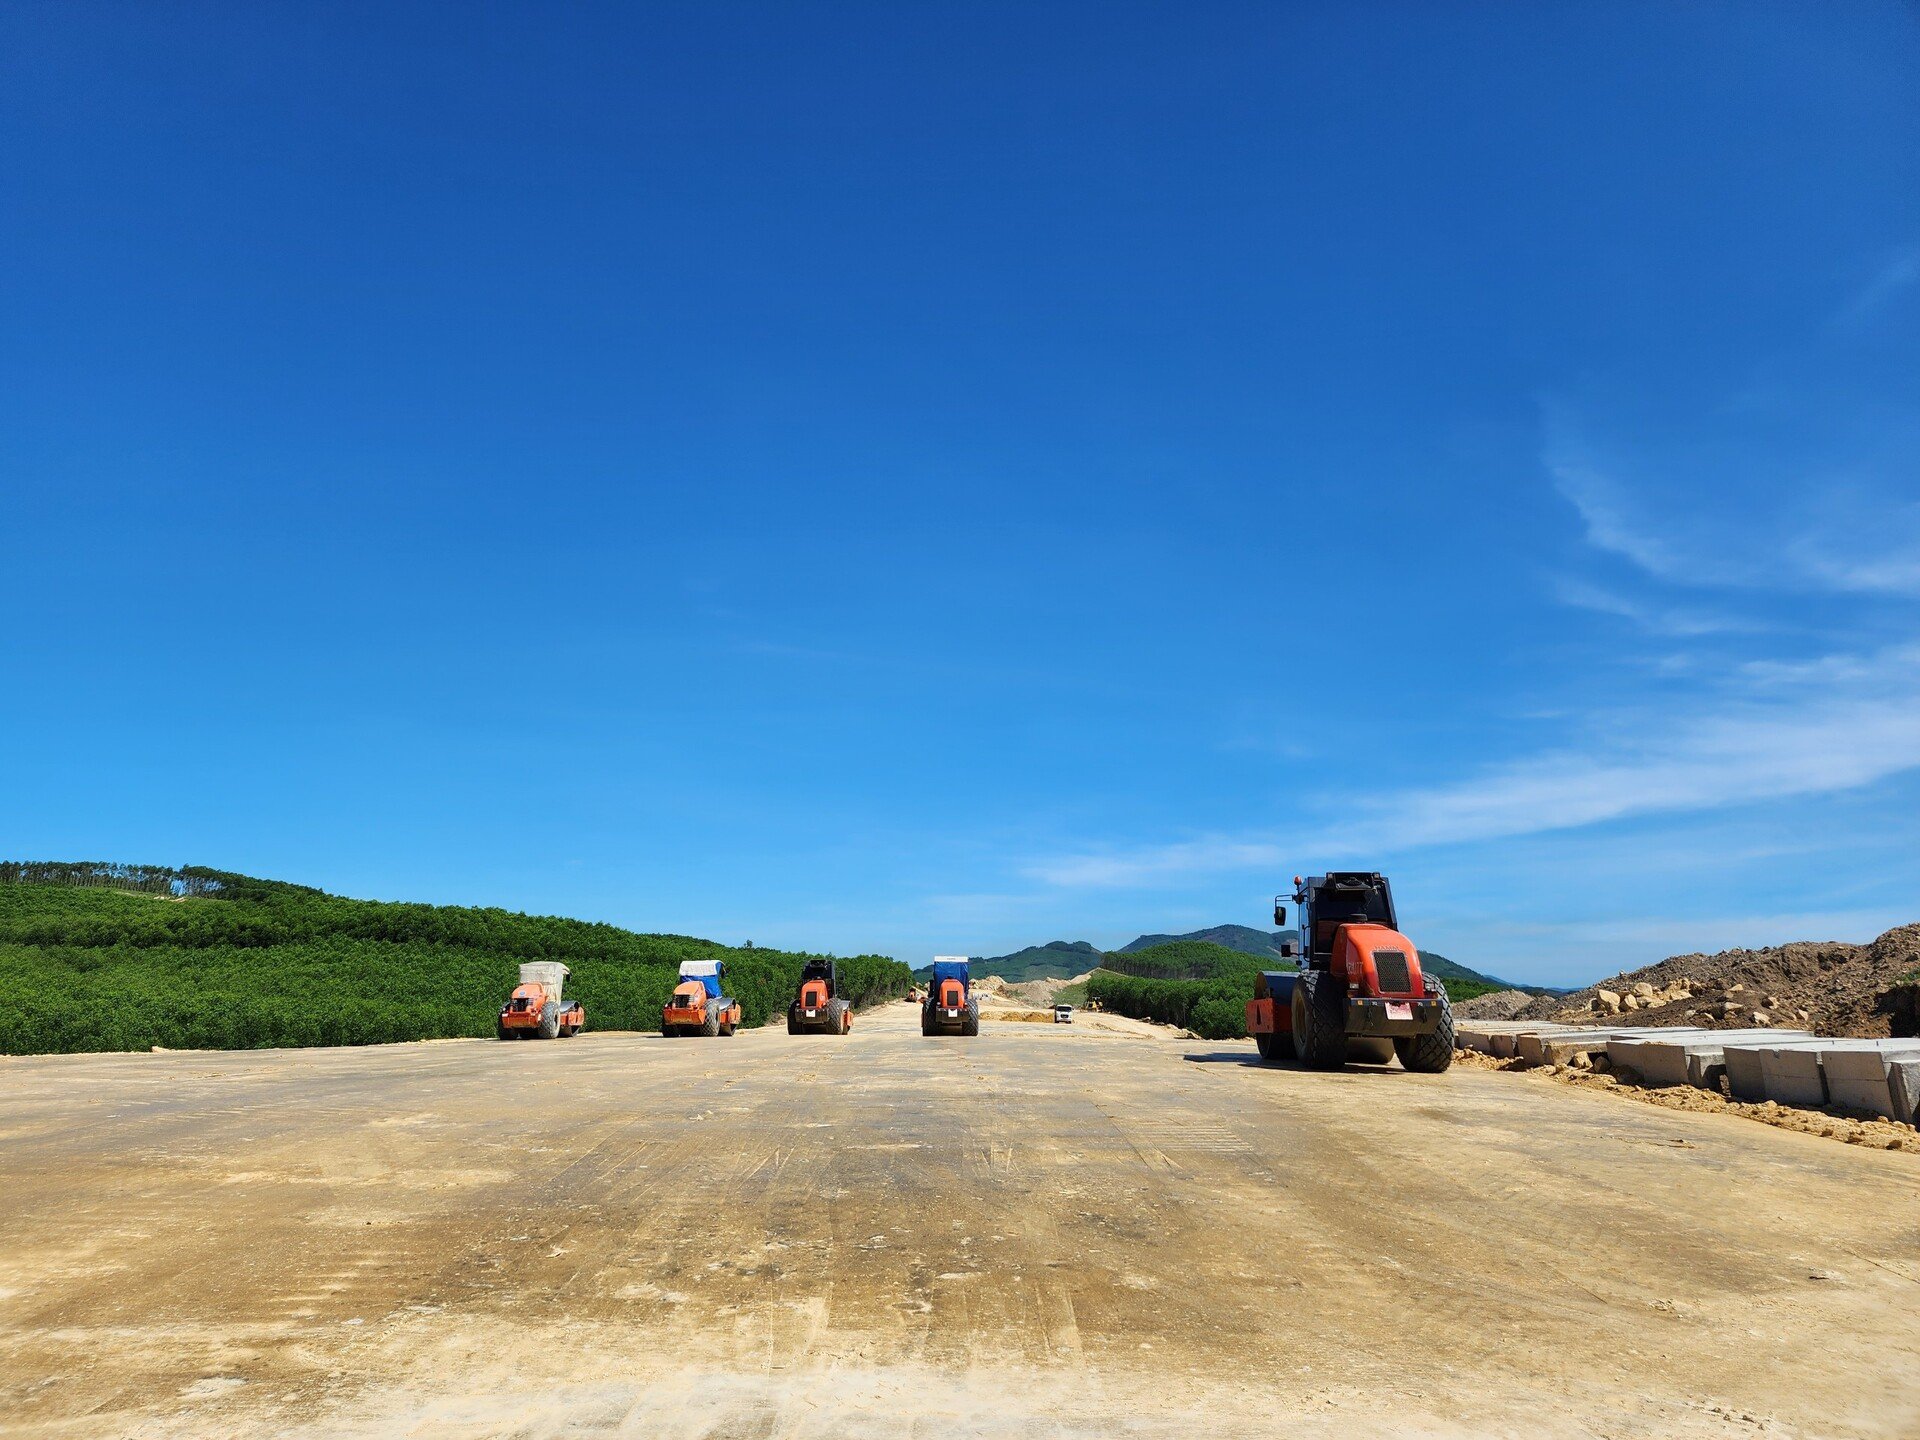 Tại thuộc gói thầu XL12, dự án Hàm Nghi - Vũng Áng hiện đã đắp được hơn 4km nền đường K95 nhờ tận dụng đất đắp được điều phối từ khu vực đồi tại Km560